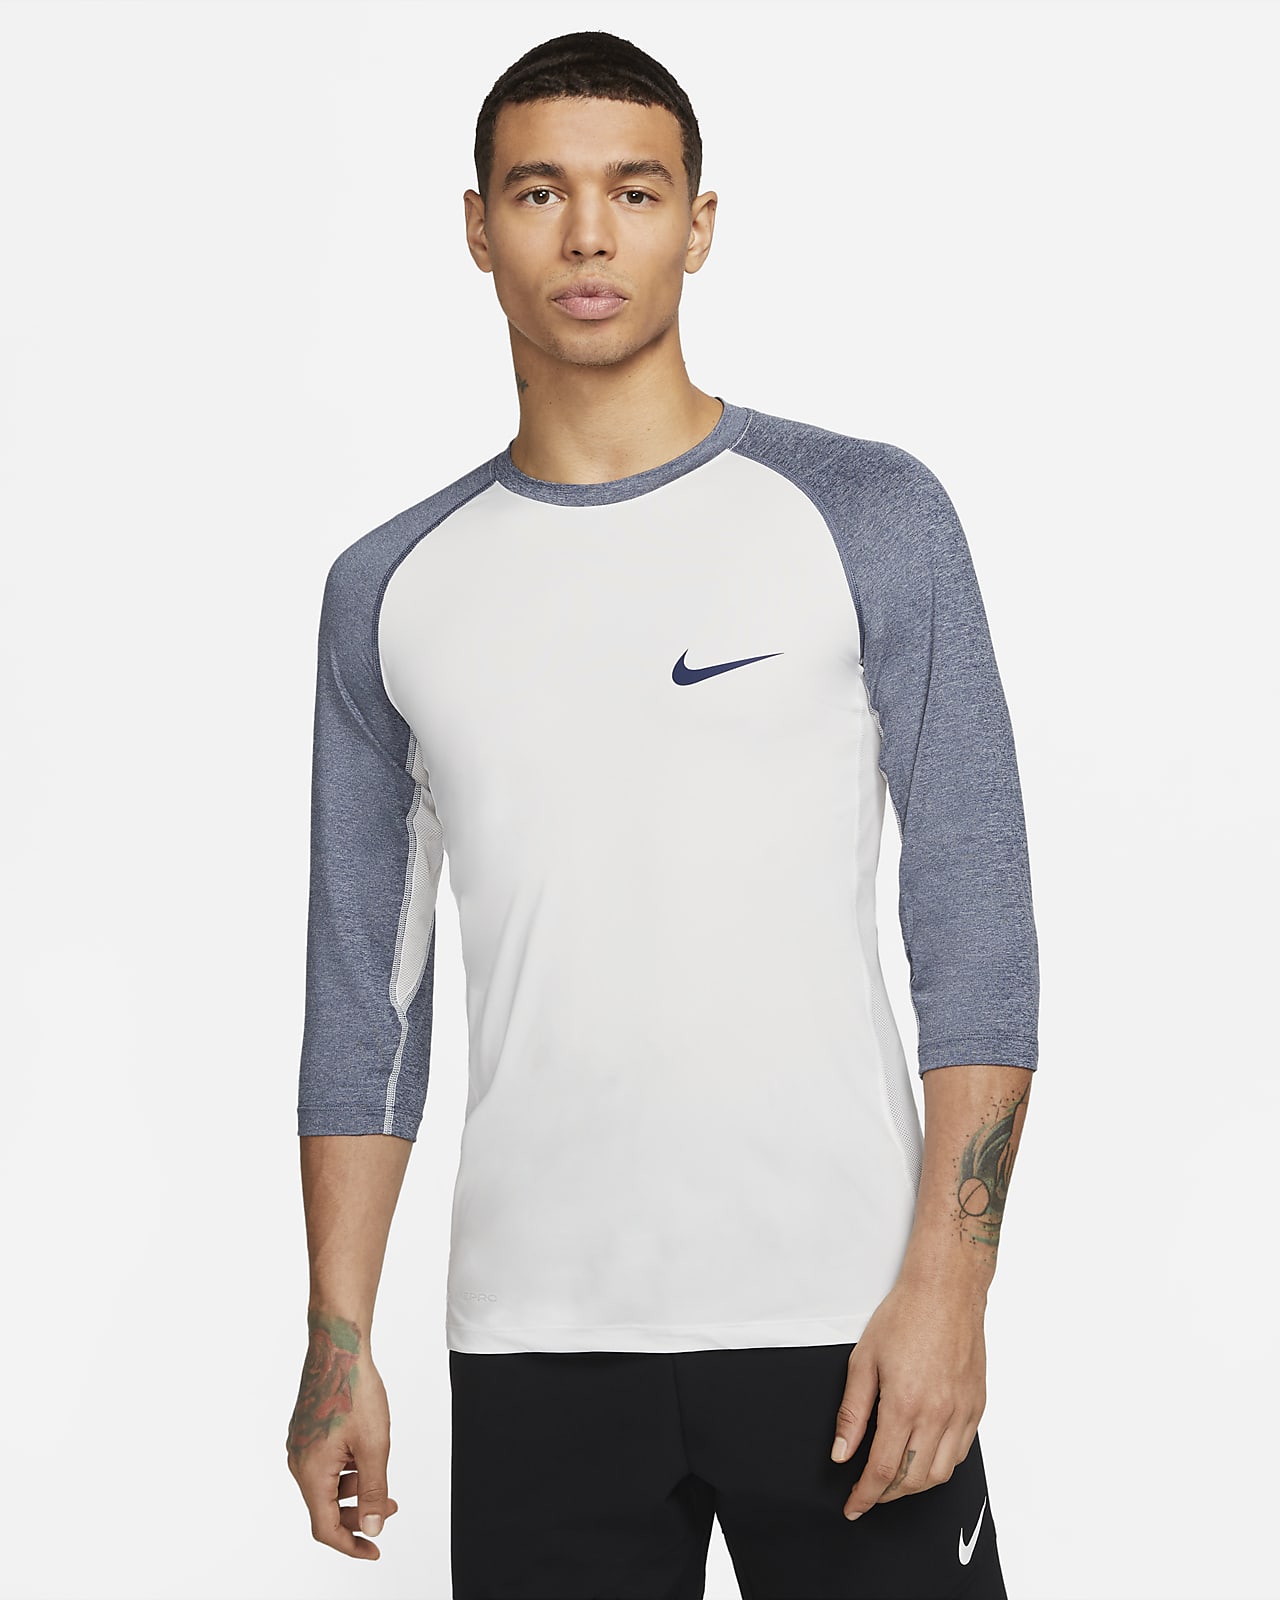 Onbemand Aandringen geroosterd brood Nike Dri-FIT Men's 3/4-Length Sleeve Baseball Top. Nike.com